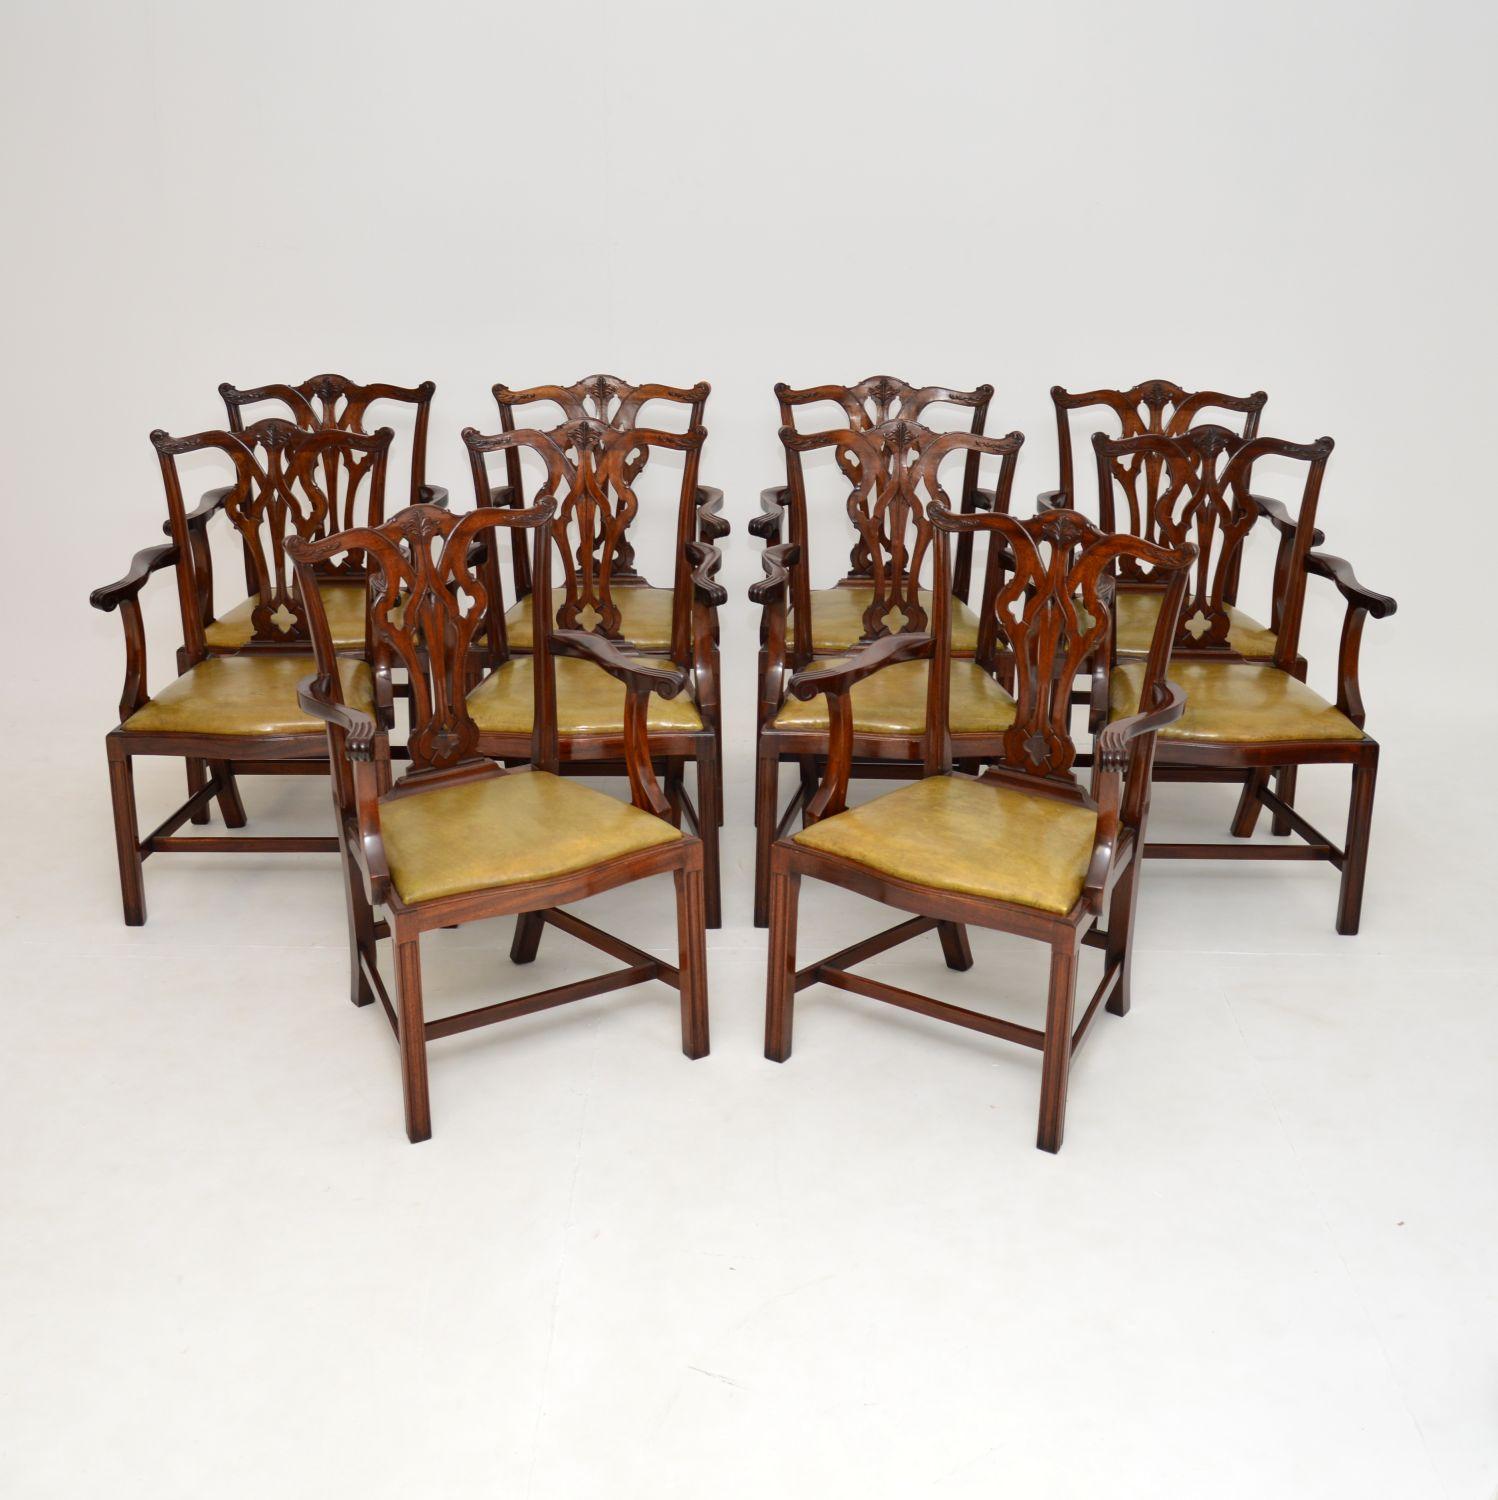 Ein prächtiger Satz von 10 antiken Chippendale-Stil Schnitzer Esszimmerstühle. Sie wurden in England hergestellt und stammen aus der Zeit zwischen 1900 und 1920.

Die Qualität ist hervorragend, und es ist sehr selten, einen Zehnersatz wie diesen zu